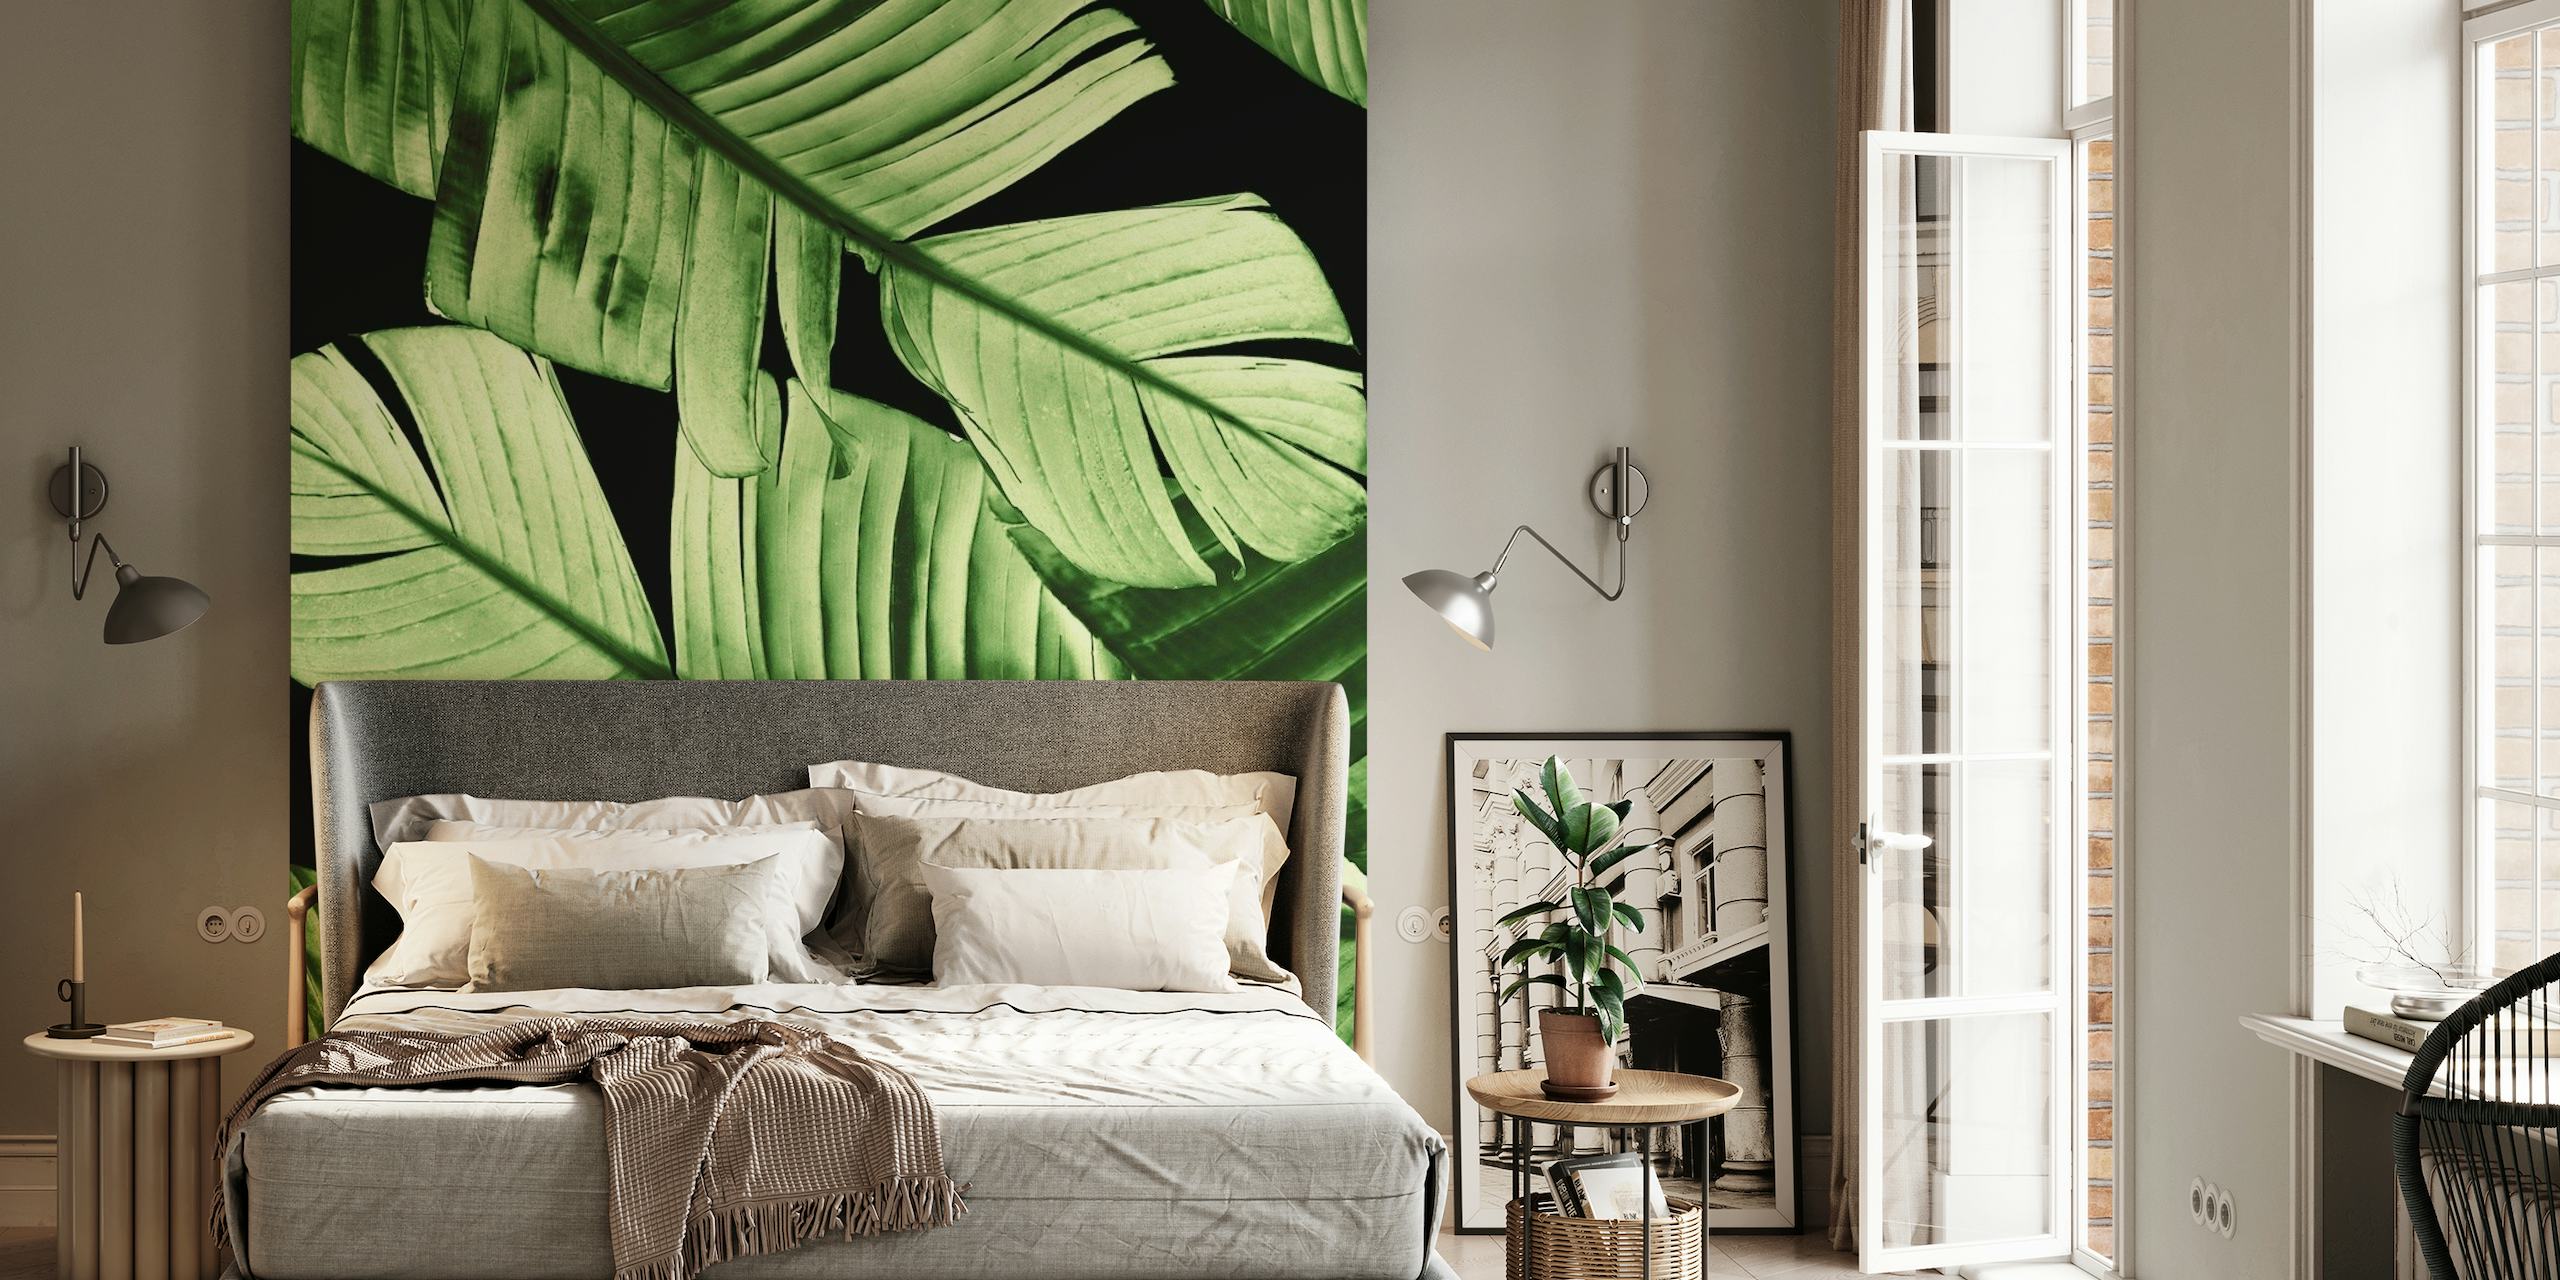 Fotomural vinílico de parede de folhas de bananeira misteriosas e exuberantes em tons verdes escuros